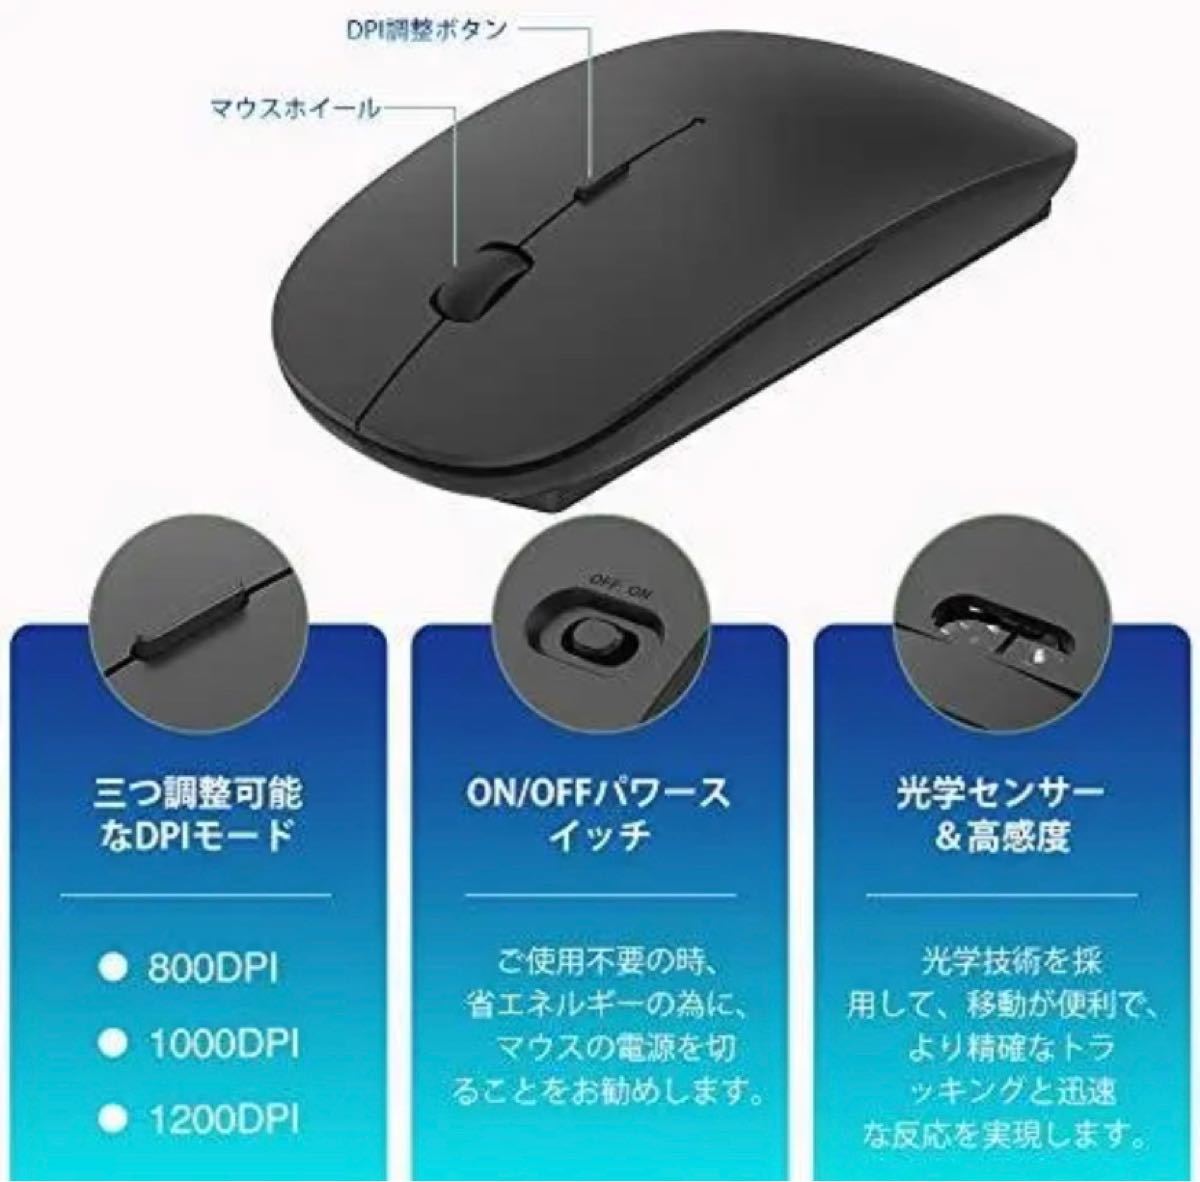 ワイヤレスマウス 静音 無線 マウス 超薄型 ABL102